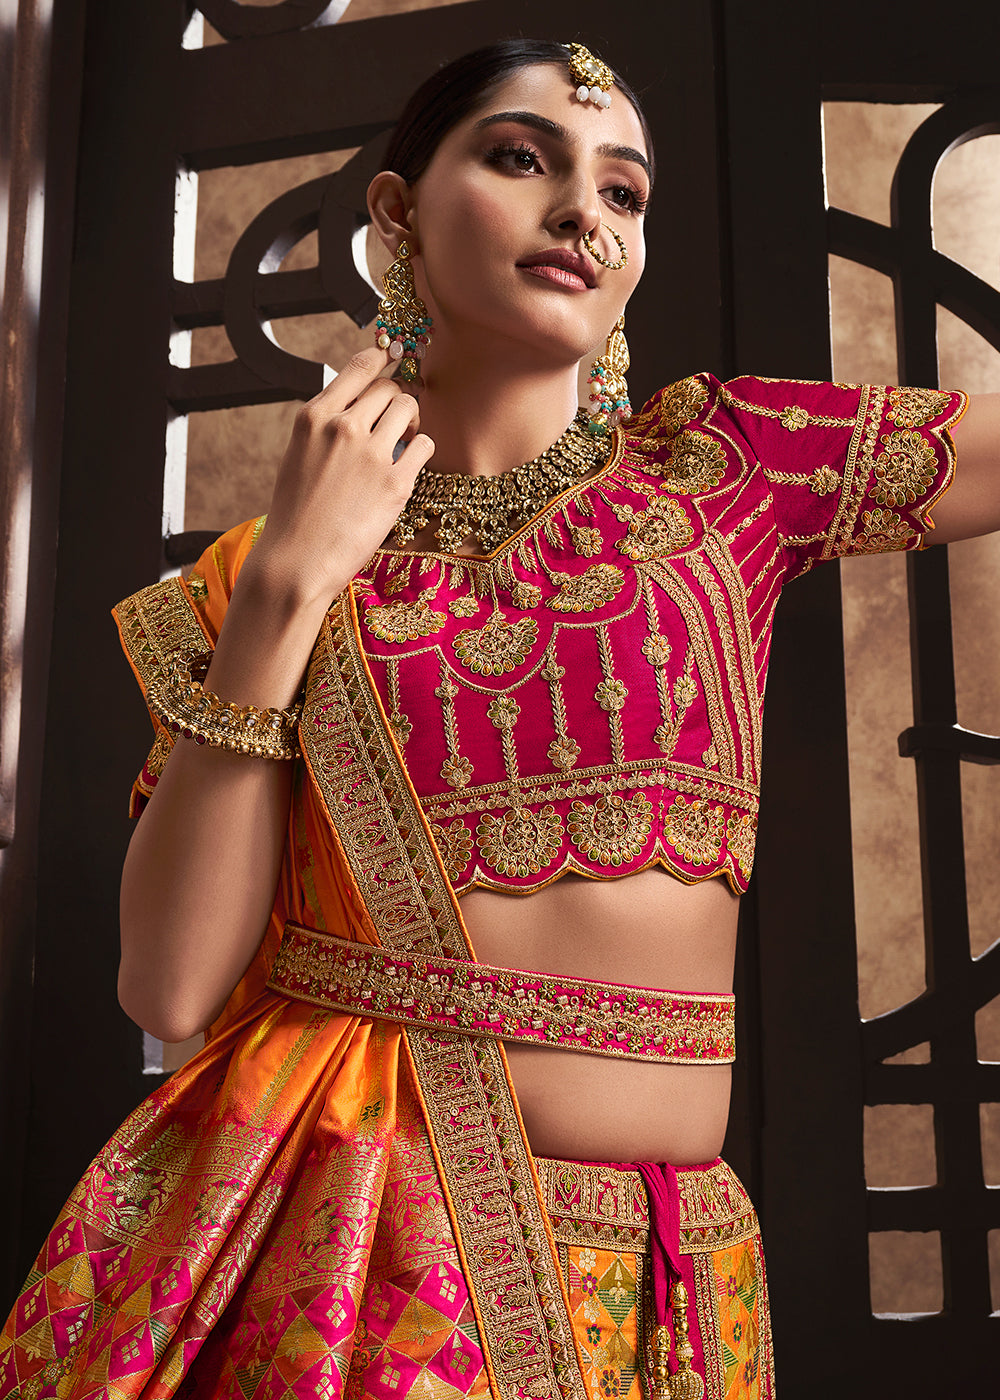 Buy Now Mustard & Pink Banarasi Silk Bridal Designer Lehenga Choli Online in USA, UK, Canada & Worldwide at Empress Clothing.